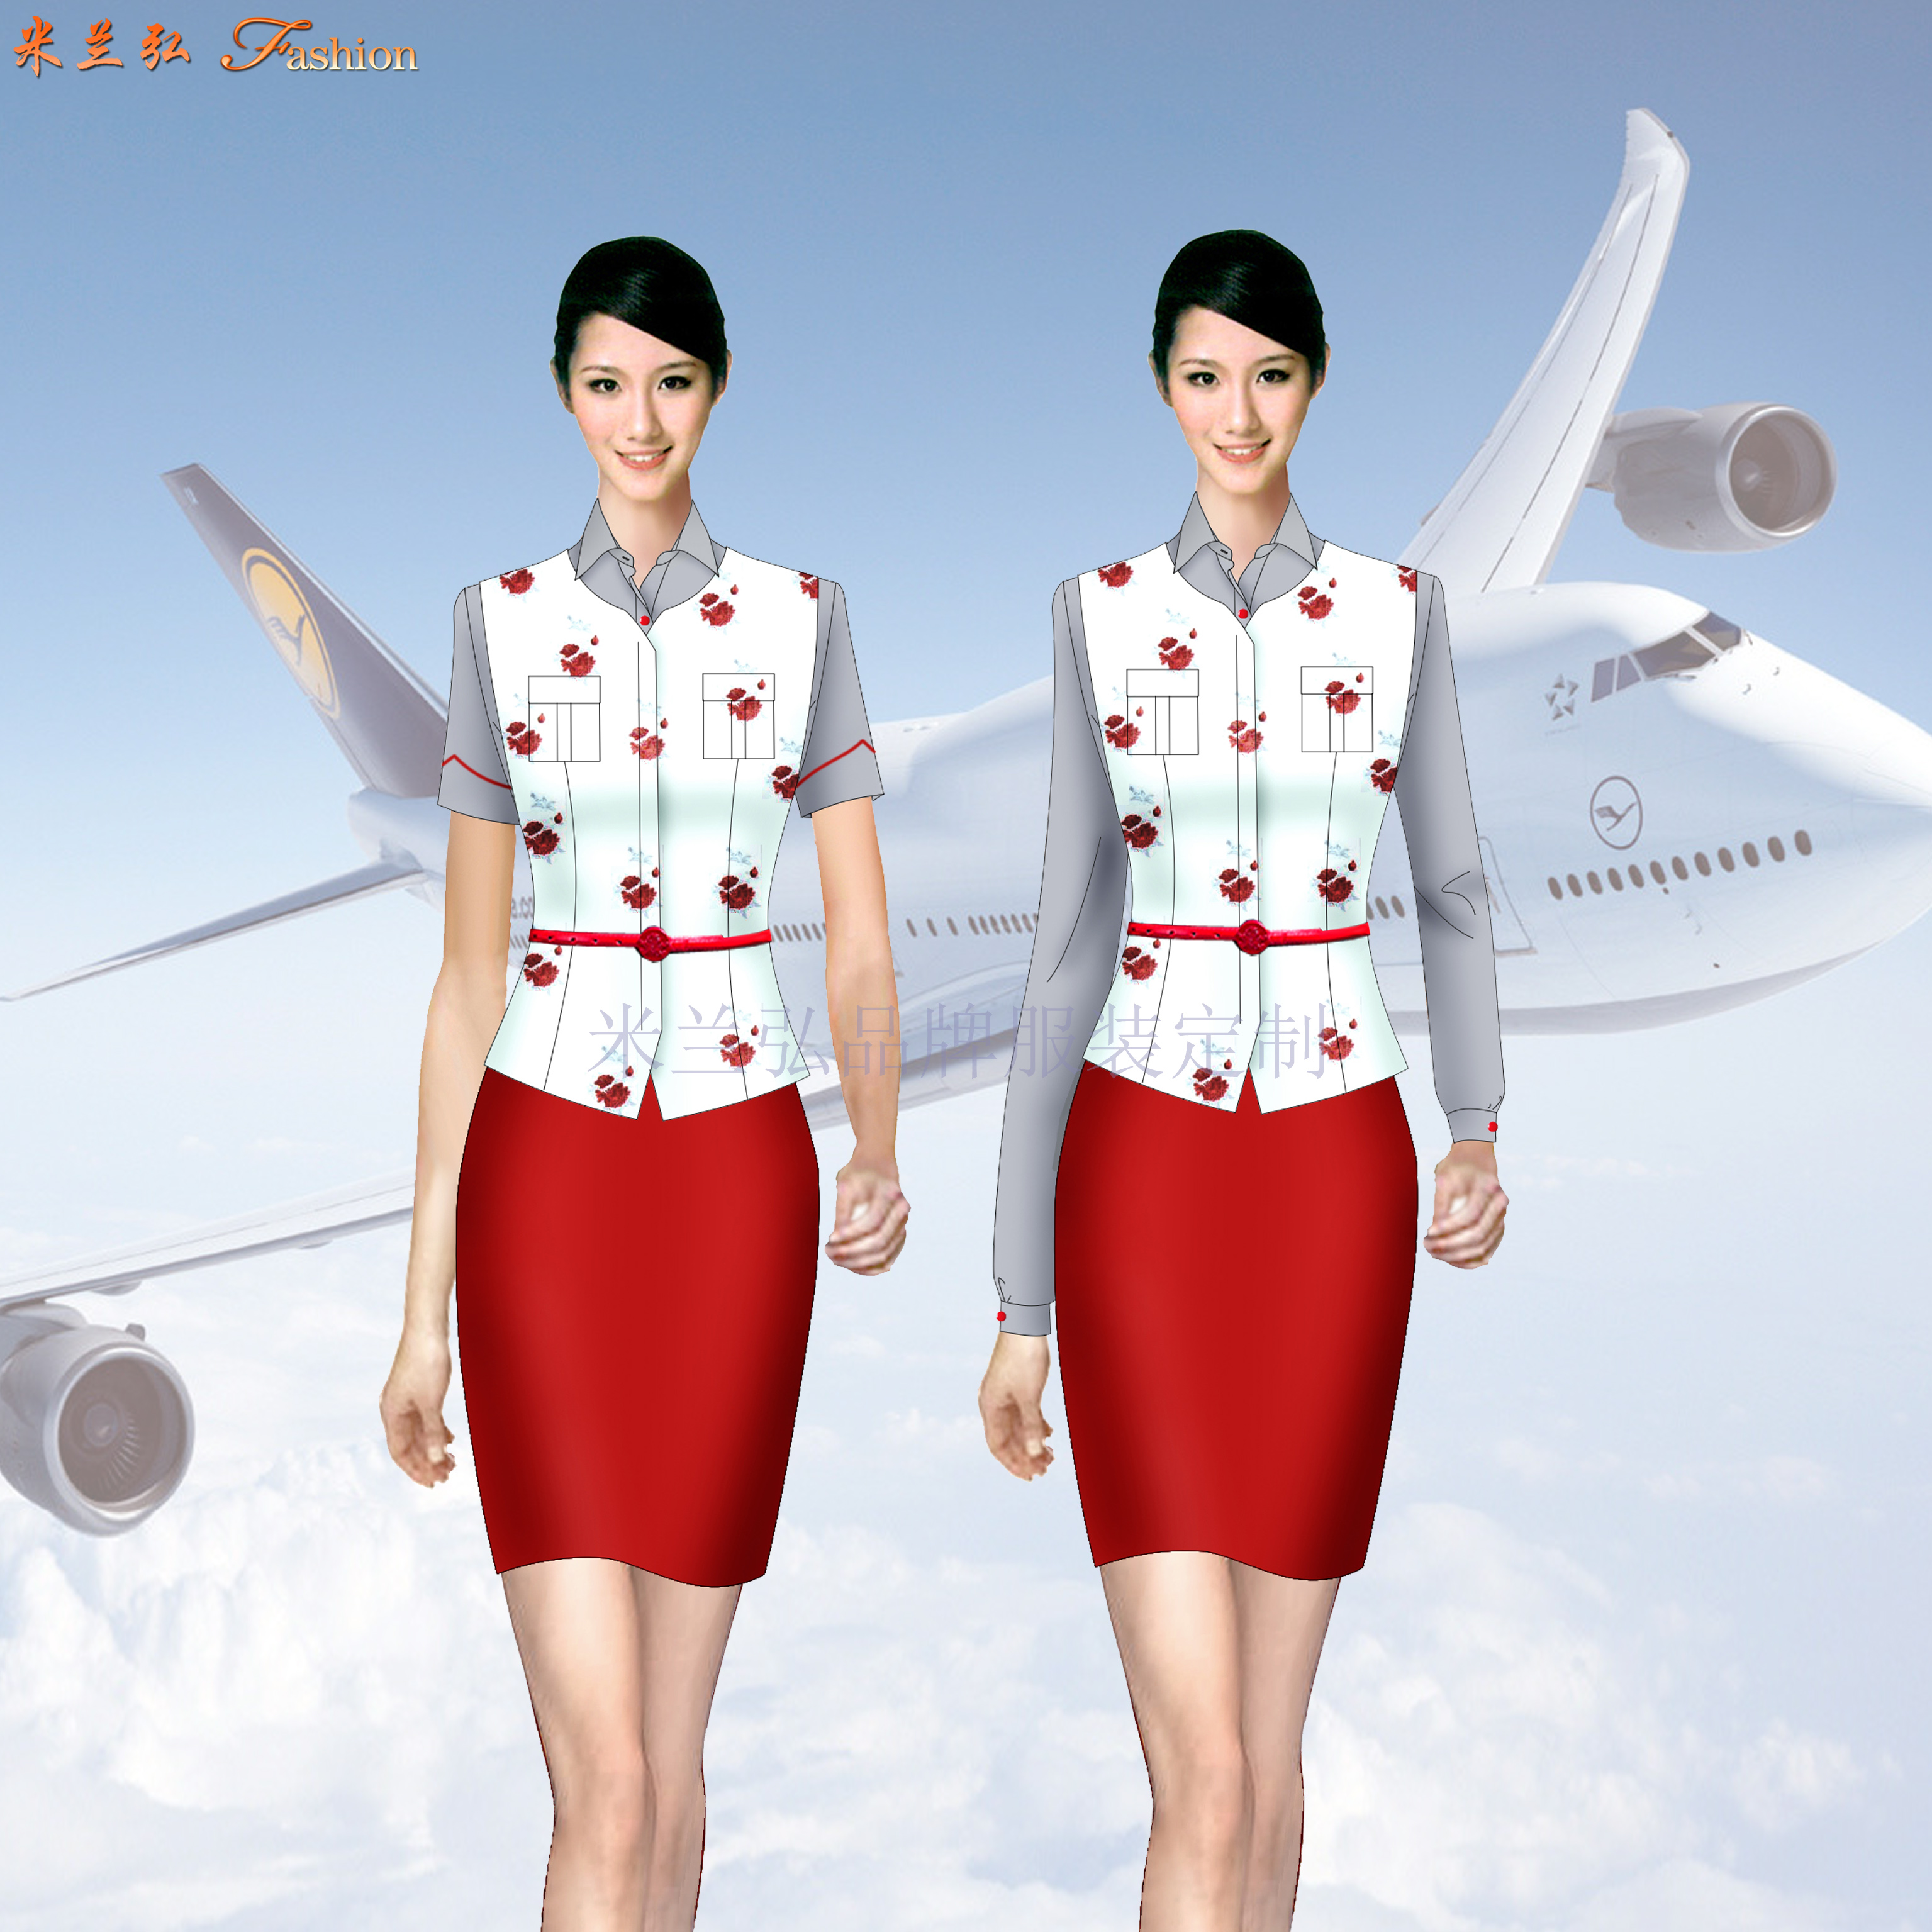 西安咸阳国际机场VIP贵宾室职业装订做-米兰弘服装厂家-3